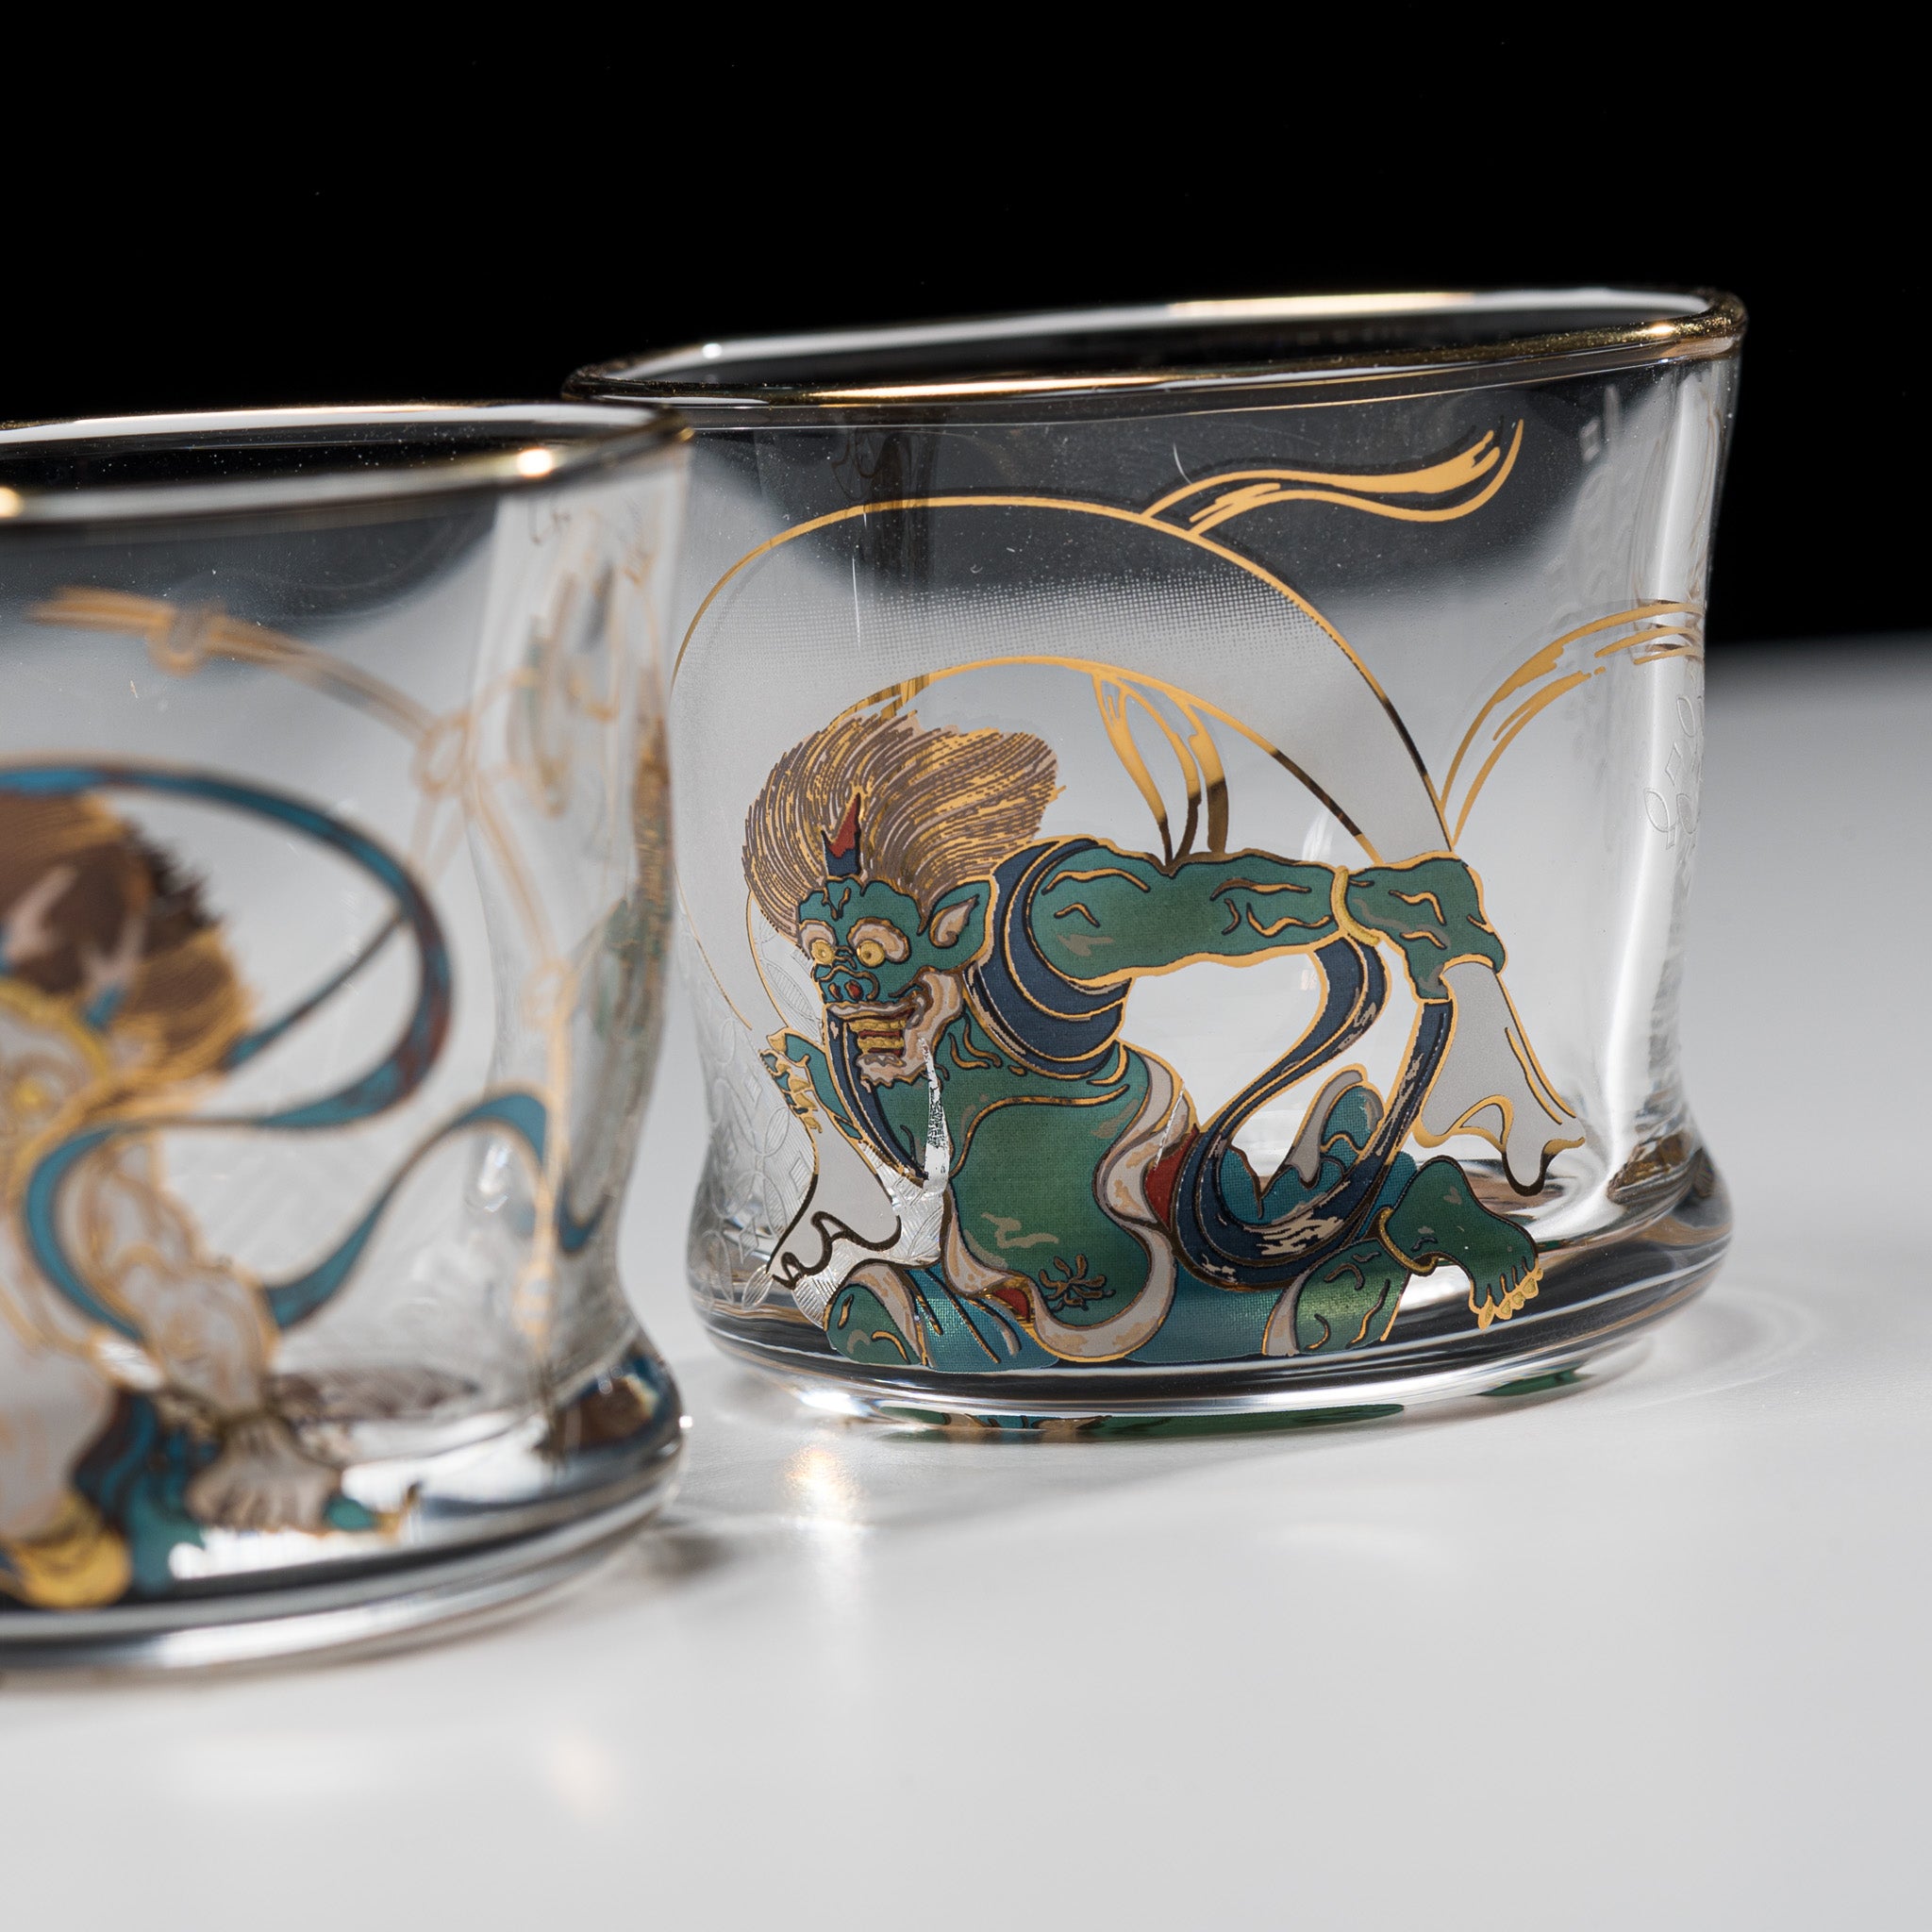 Fujin-Raijin Sake Glass Pair Set / 風神雷神 盃セット